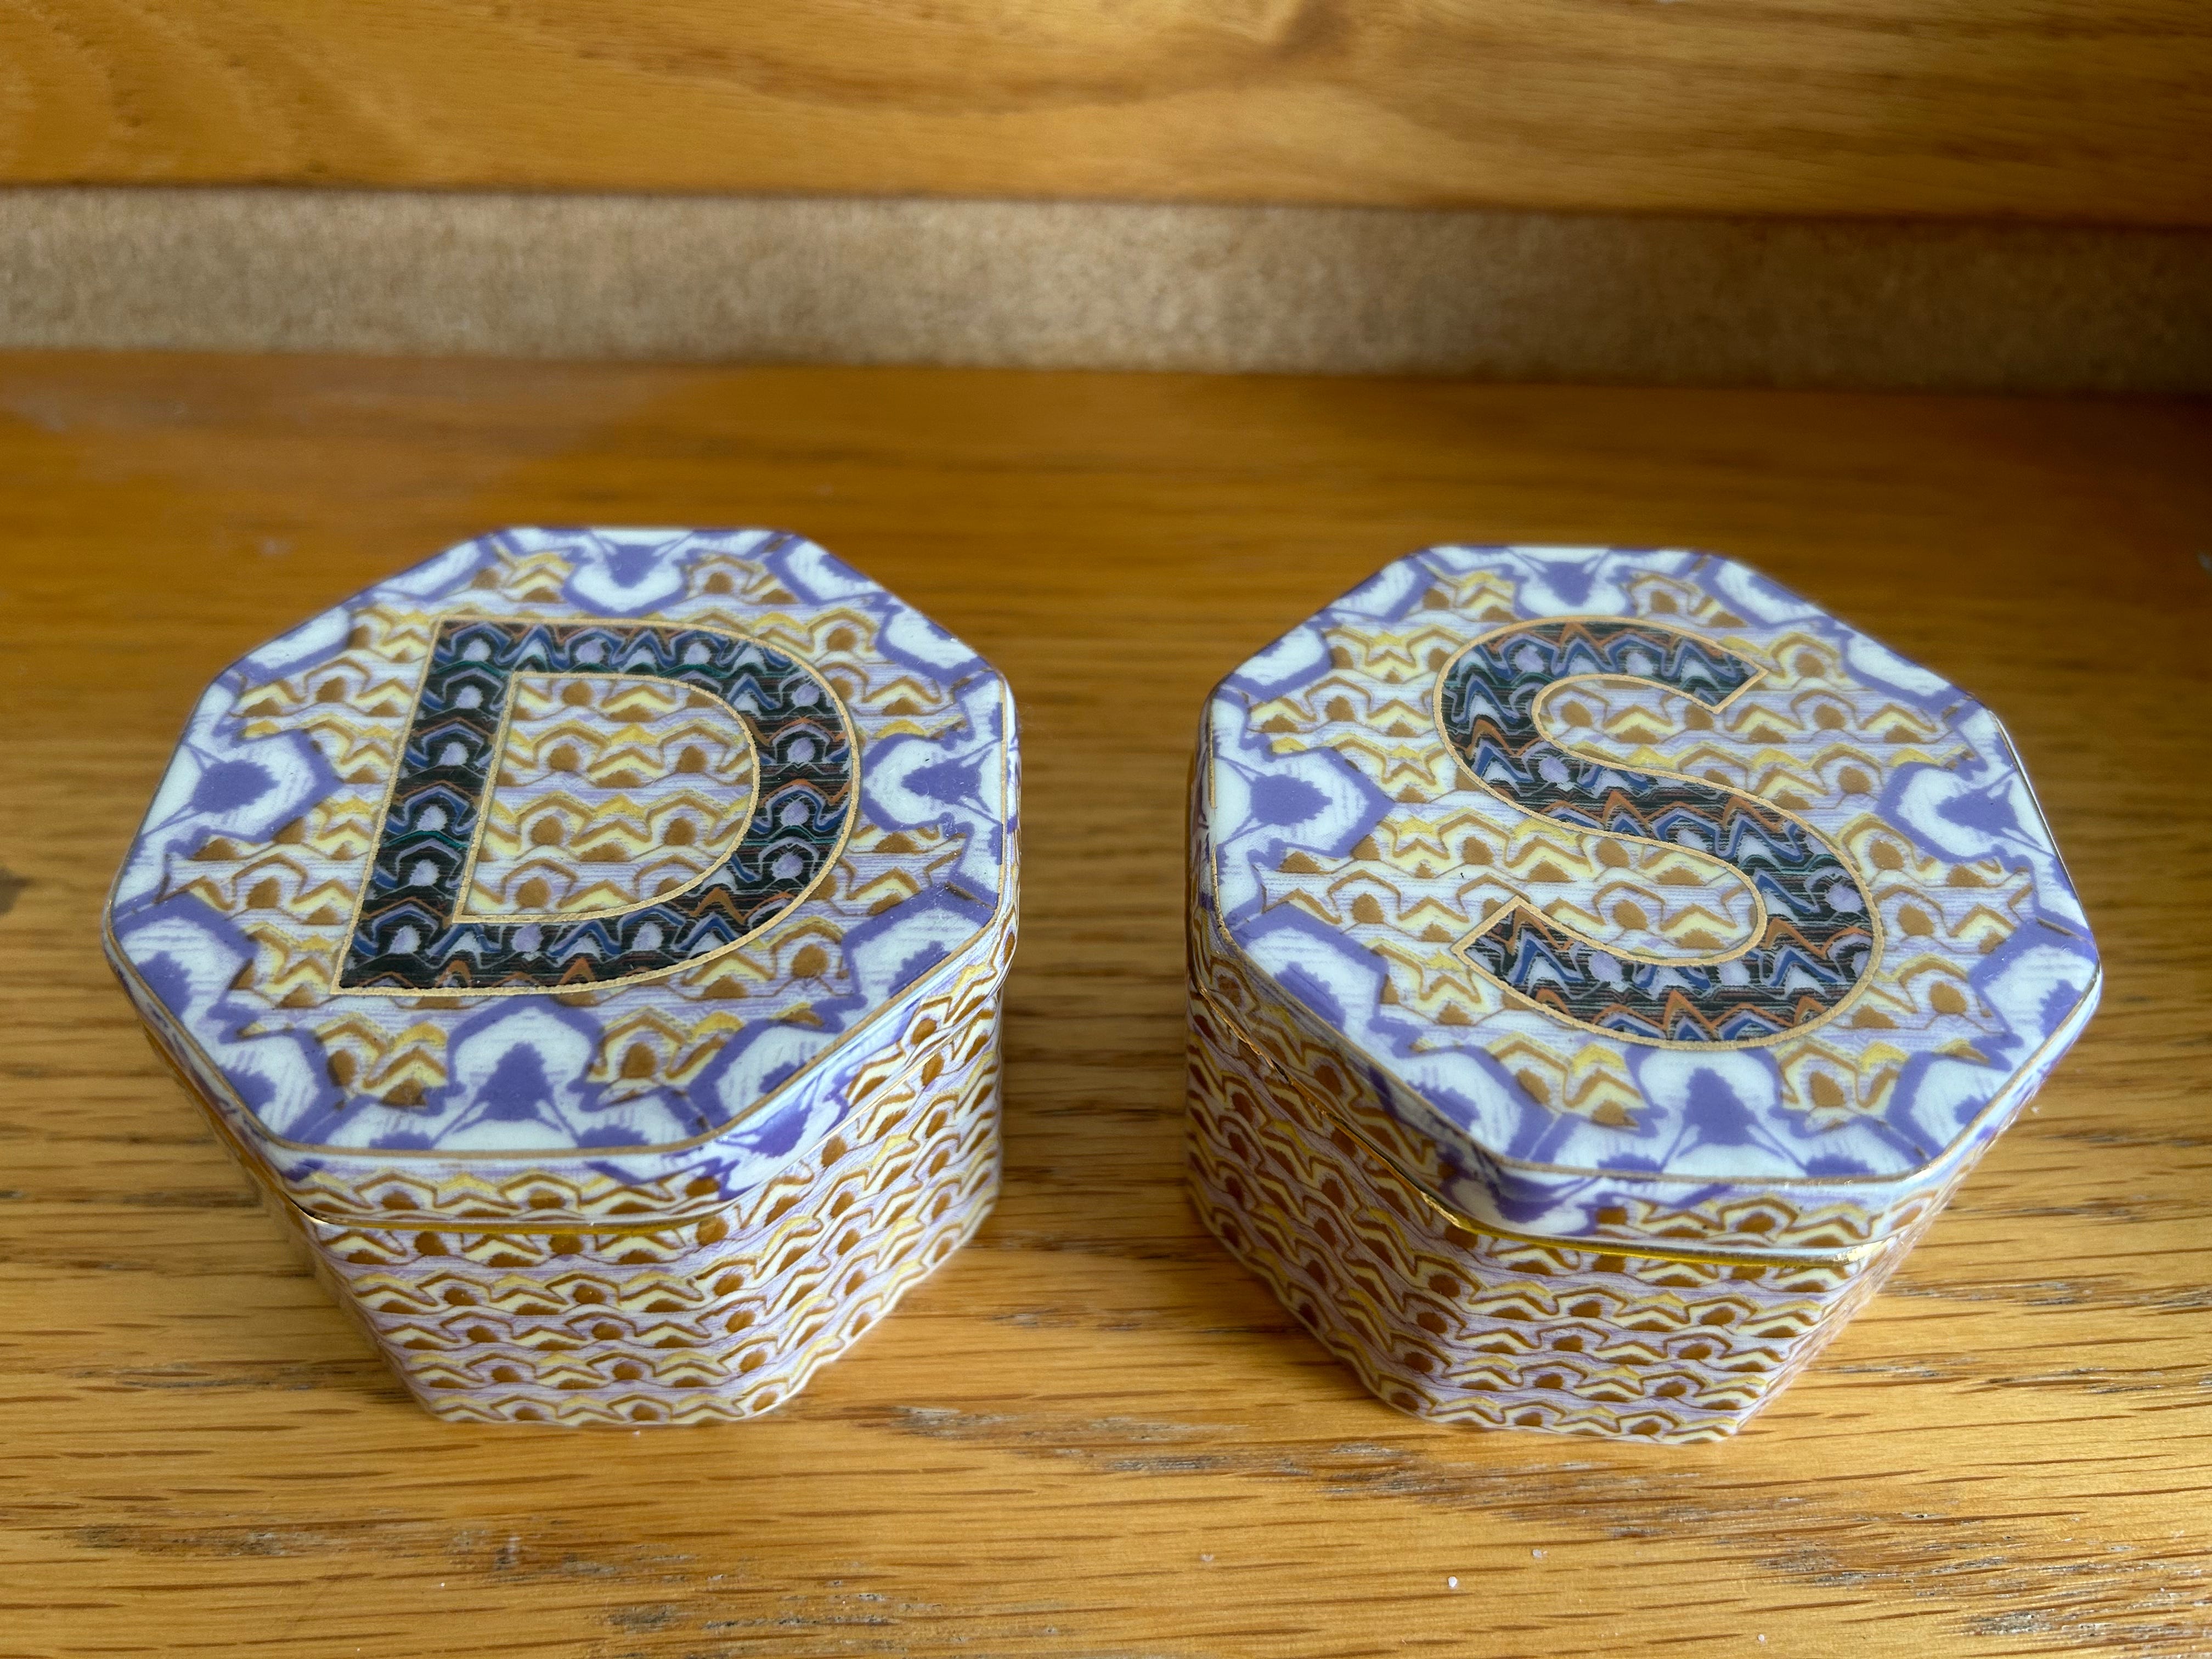 Zwei blau-goldene Mosaik-Schmuckgläser.  Auf dem einen ist ein D und auf dem Deckel des anderen ein S